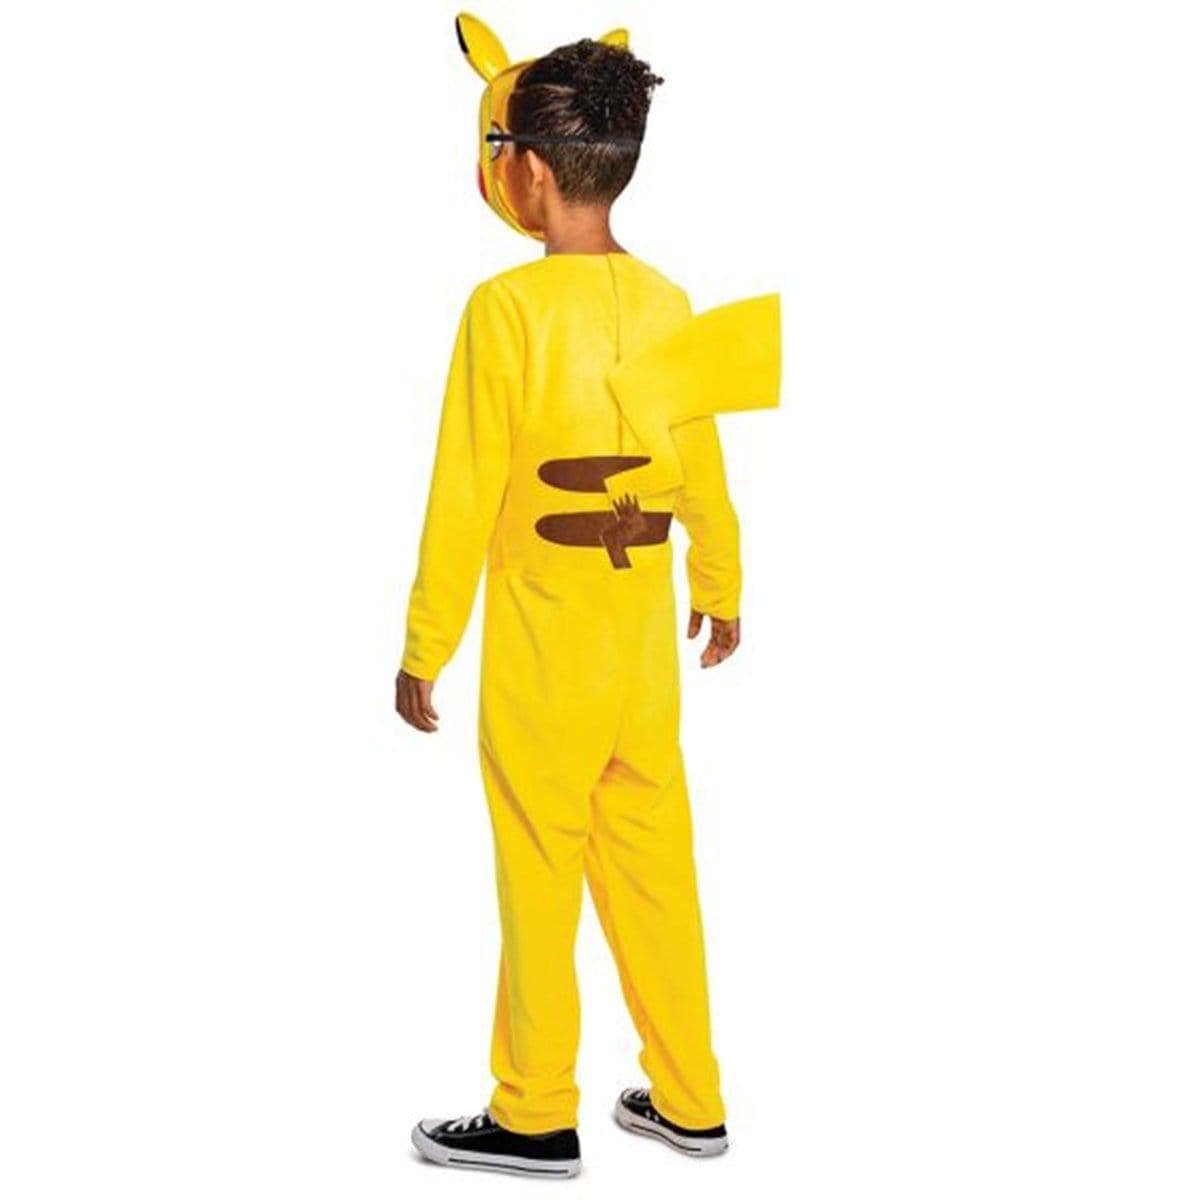 Déguisement combinaison Pikachu Pokémon™ enfant : Deguise-toi